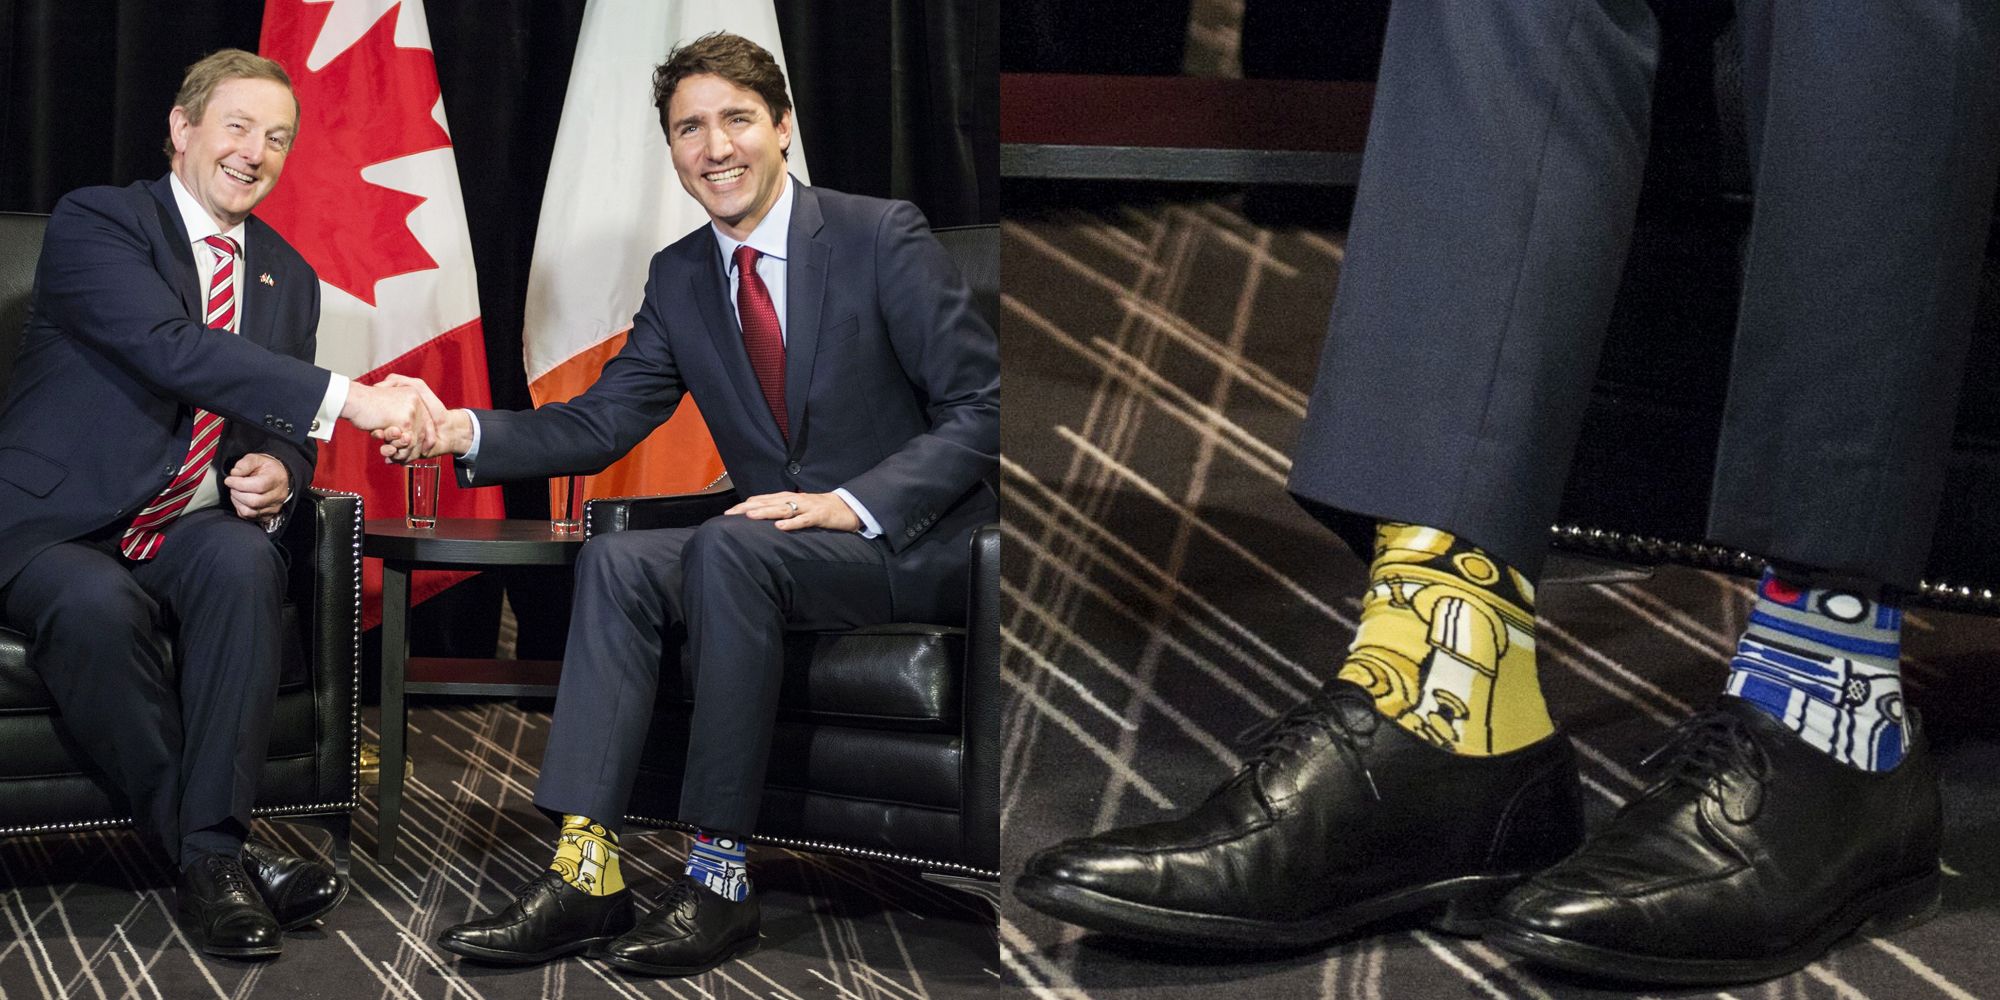 Justin Trudeau in Star Wars Socks from Kumplo